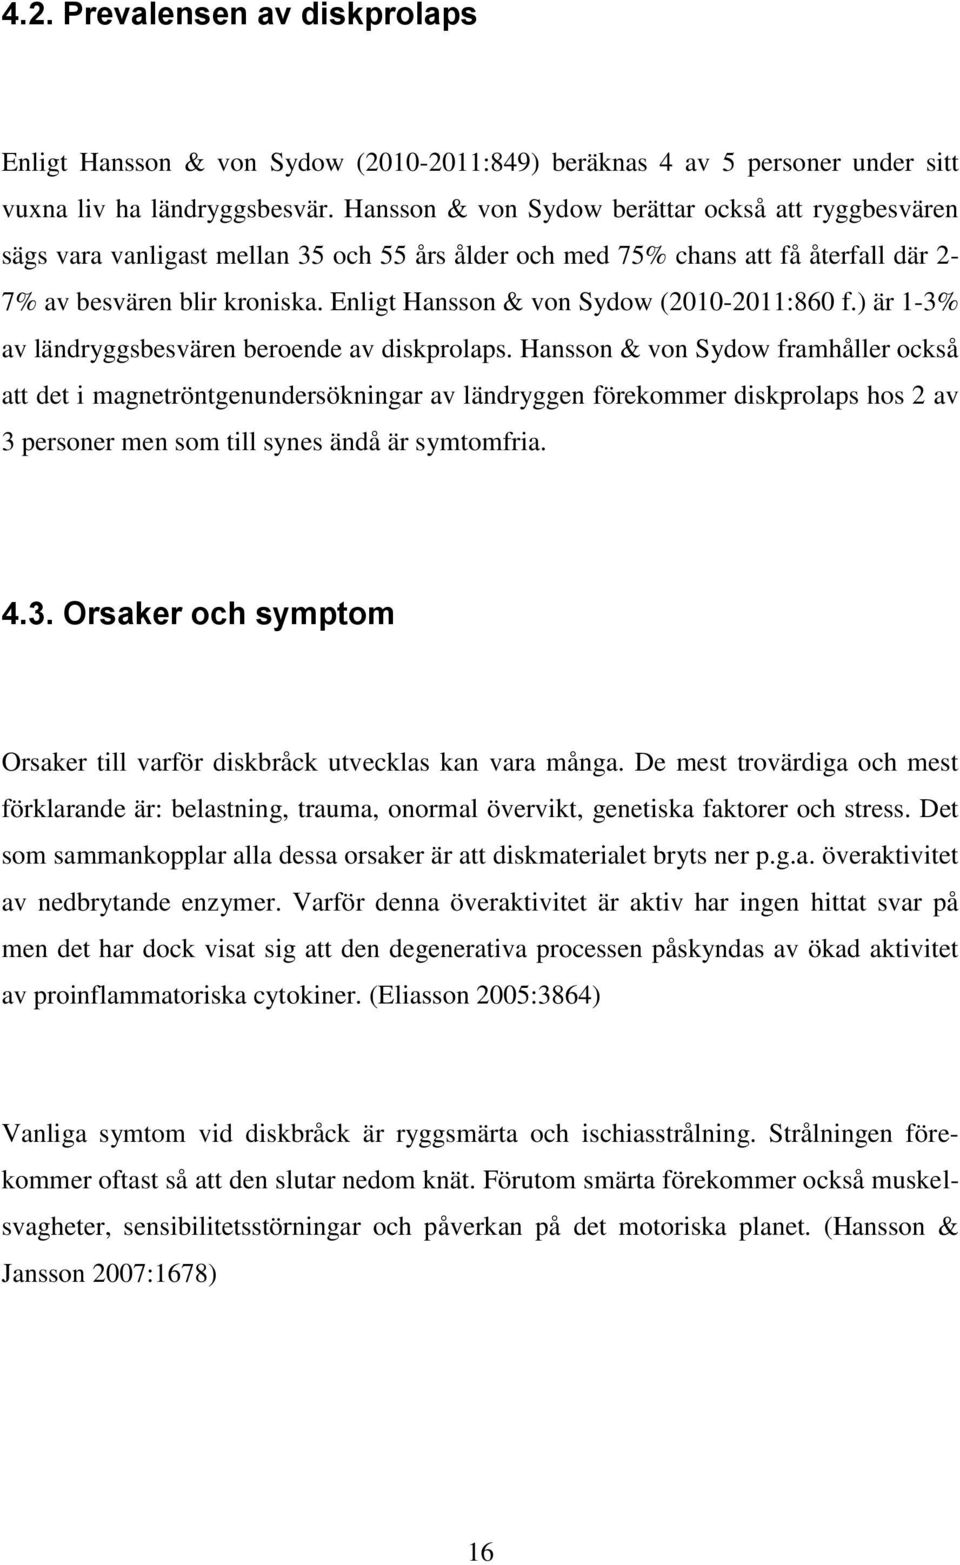 Enligt Hansson & von Sydow (2010-2011:860 f.) är 1-3% av ländryggsbesvären beroende av diskprolaps.